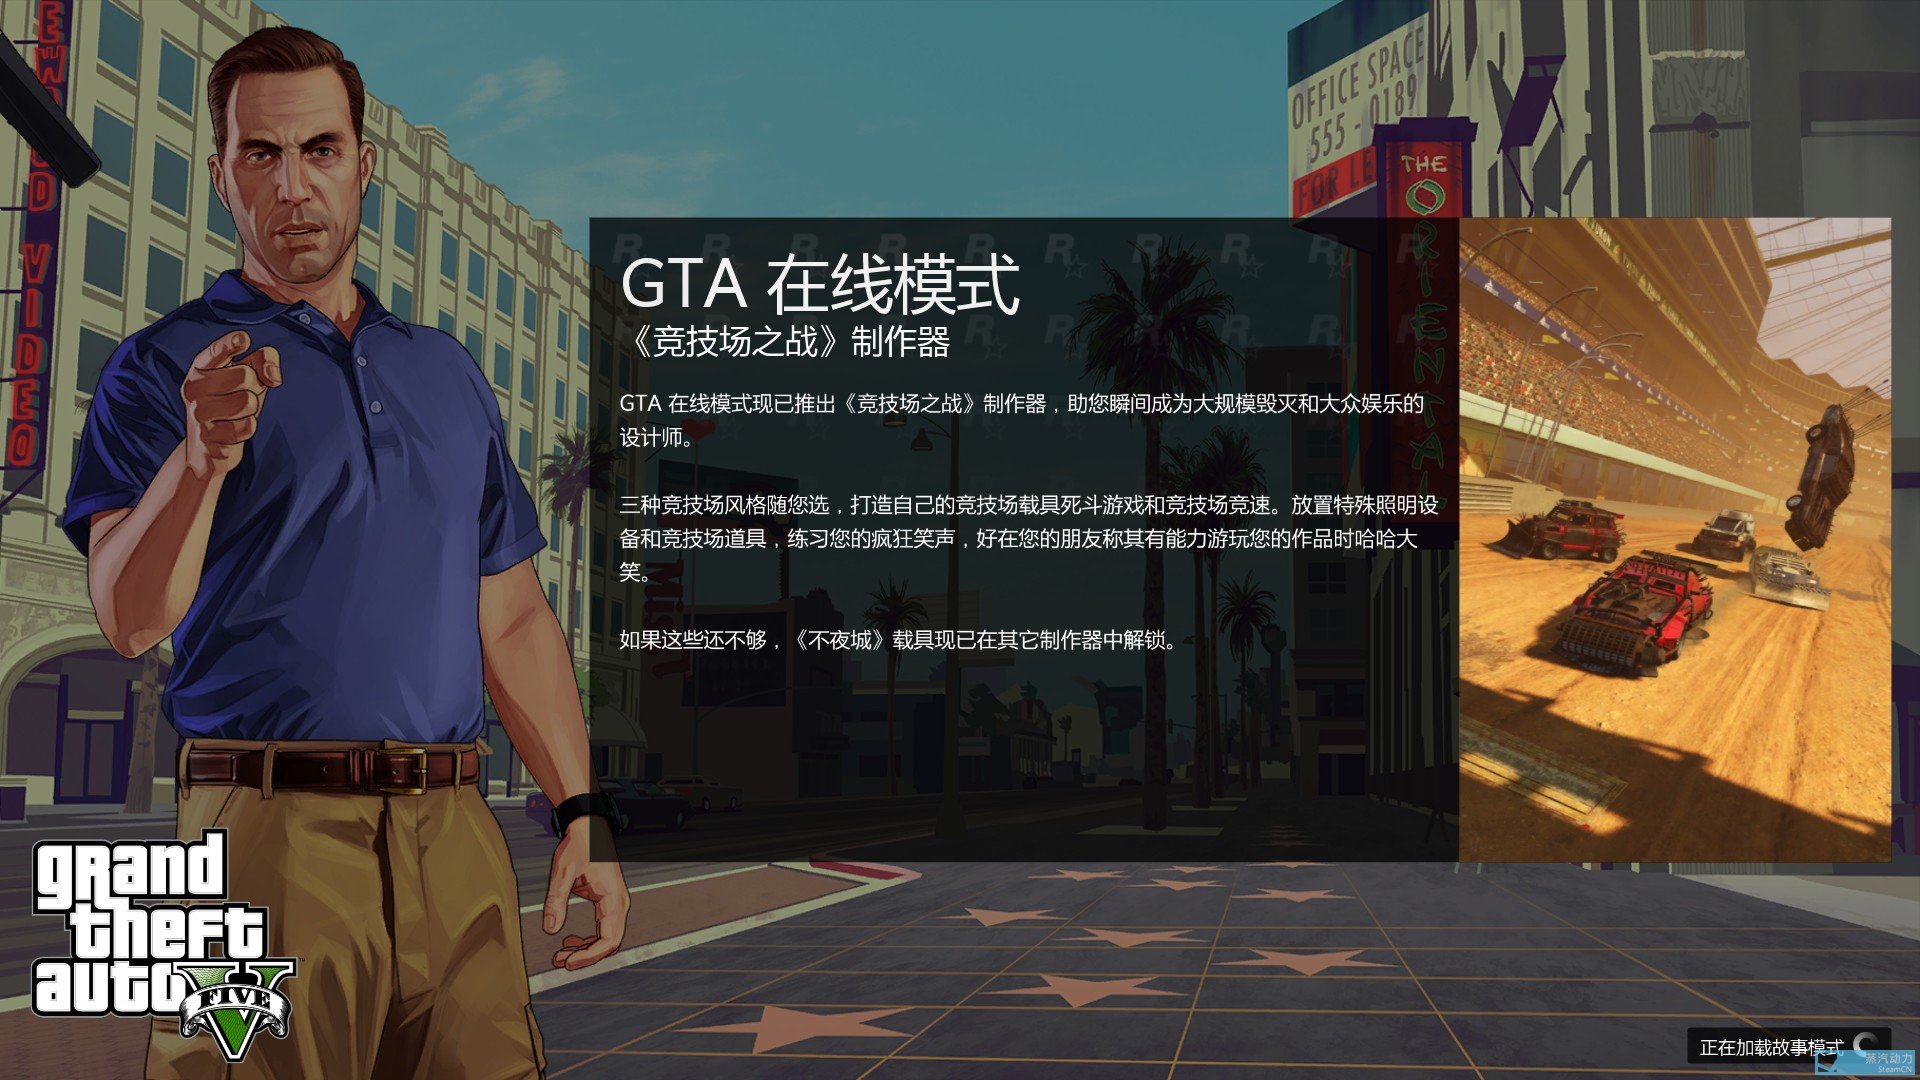 Gta5卡在 正在加载故事模式 怎么办 游戏 成就问题 其乐keylol 驱动正版游戏的引擎